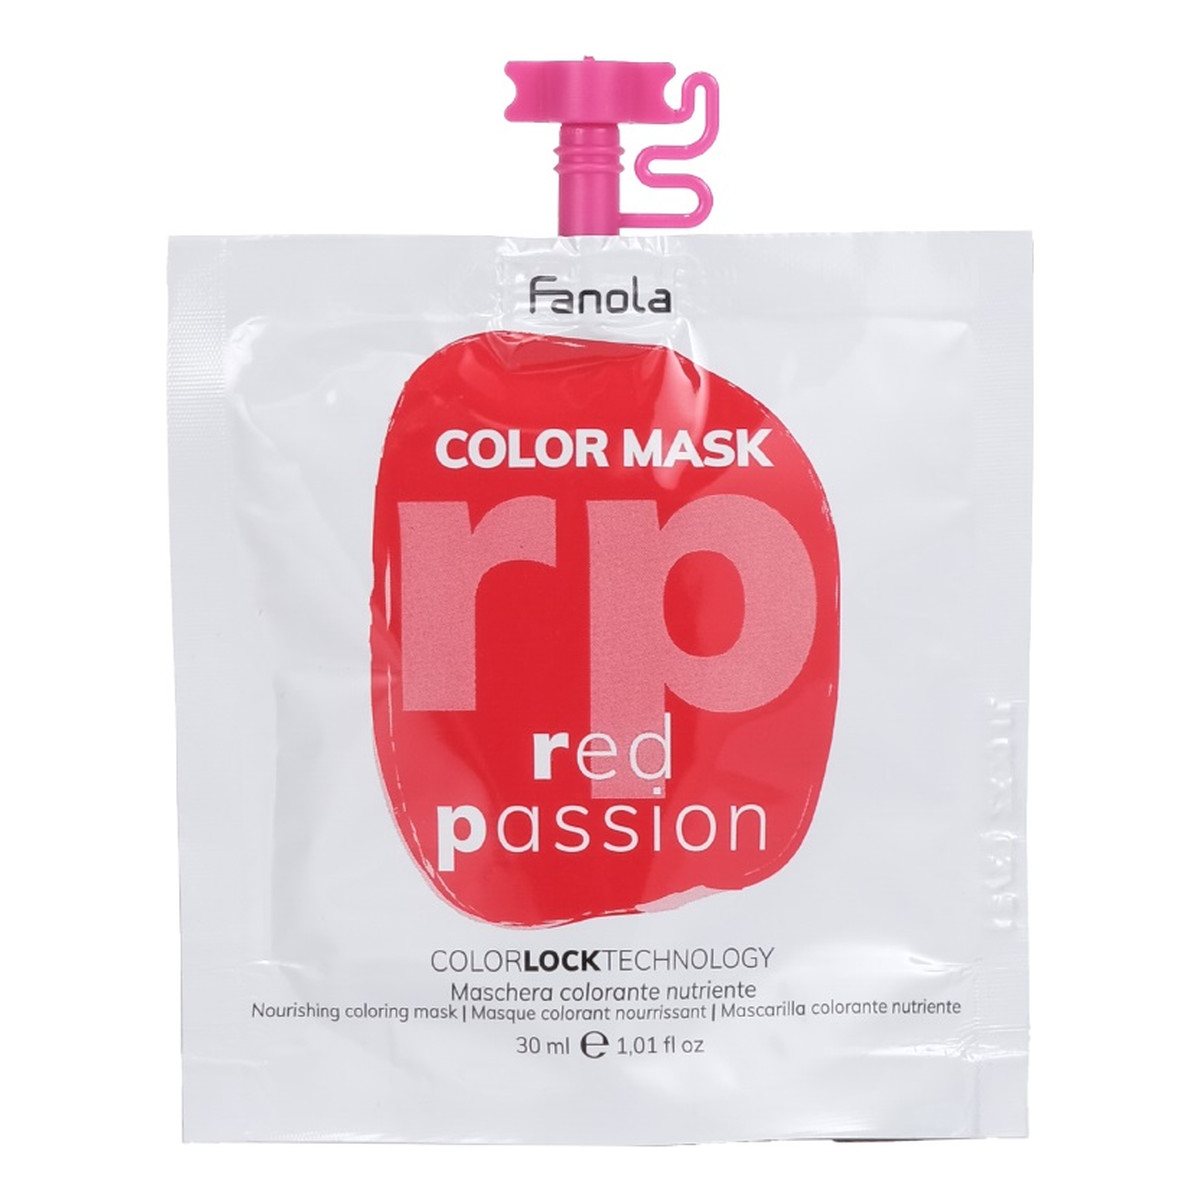 Fanola Color mask maska koloryzująca do włosów red passion 30ml